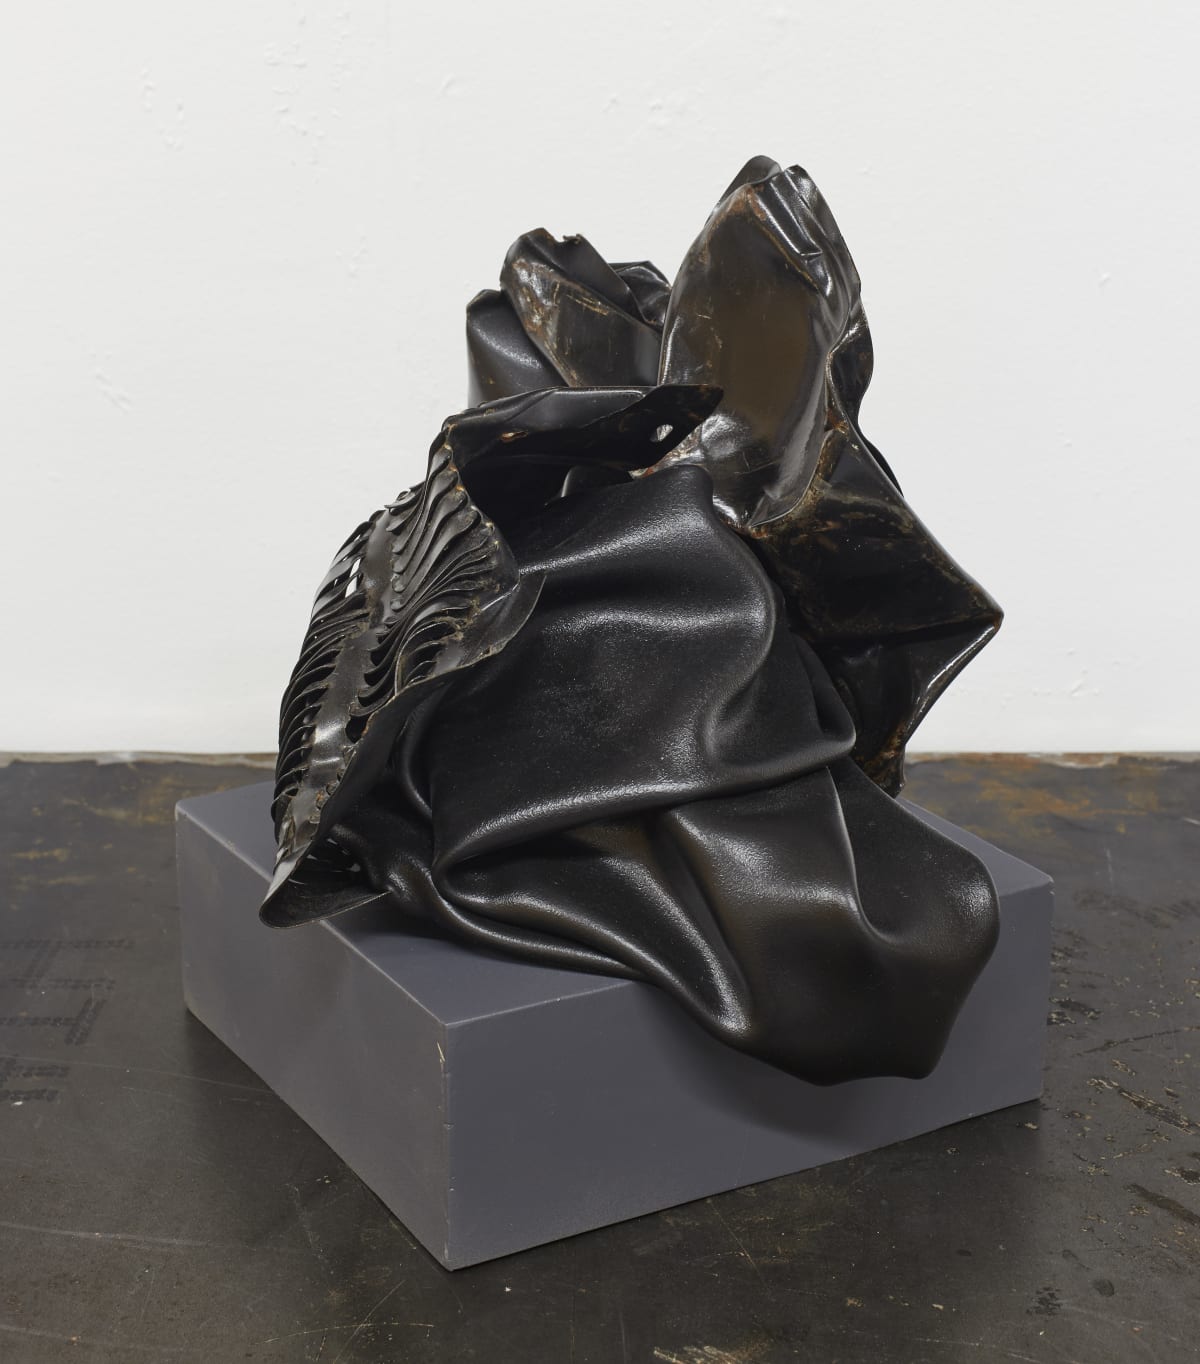 Meet Sculptor Kennedy Yanko — less than half